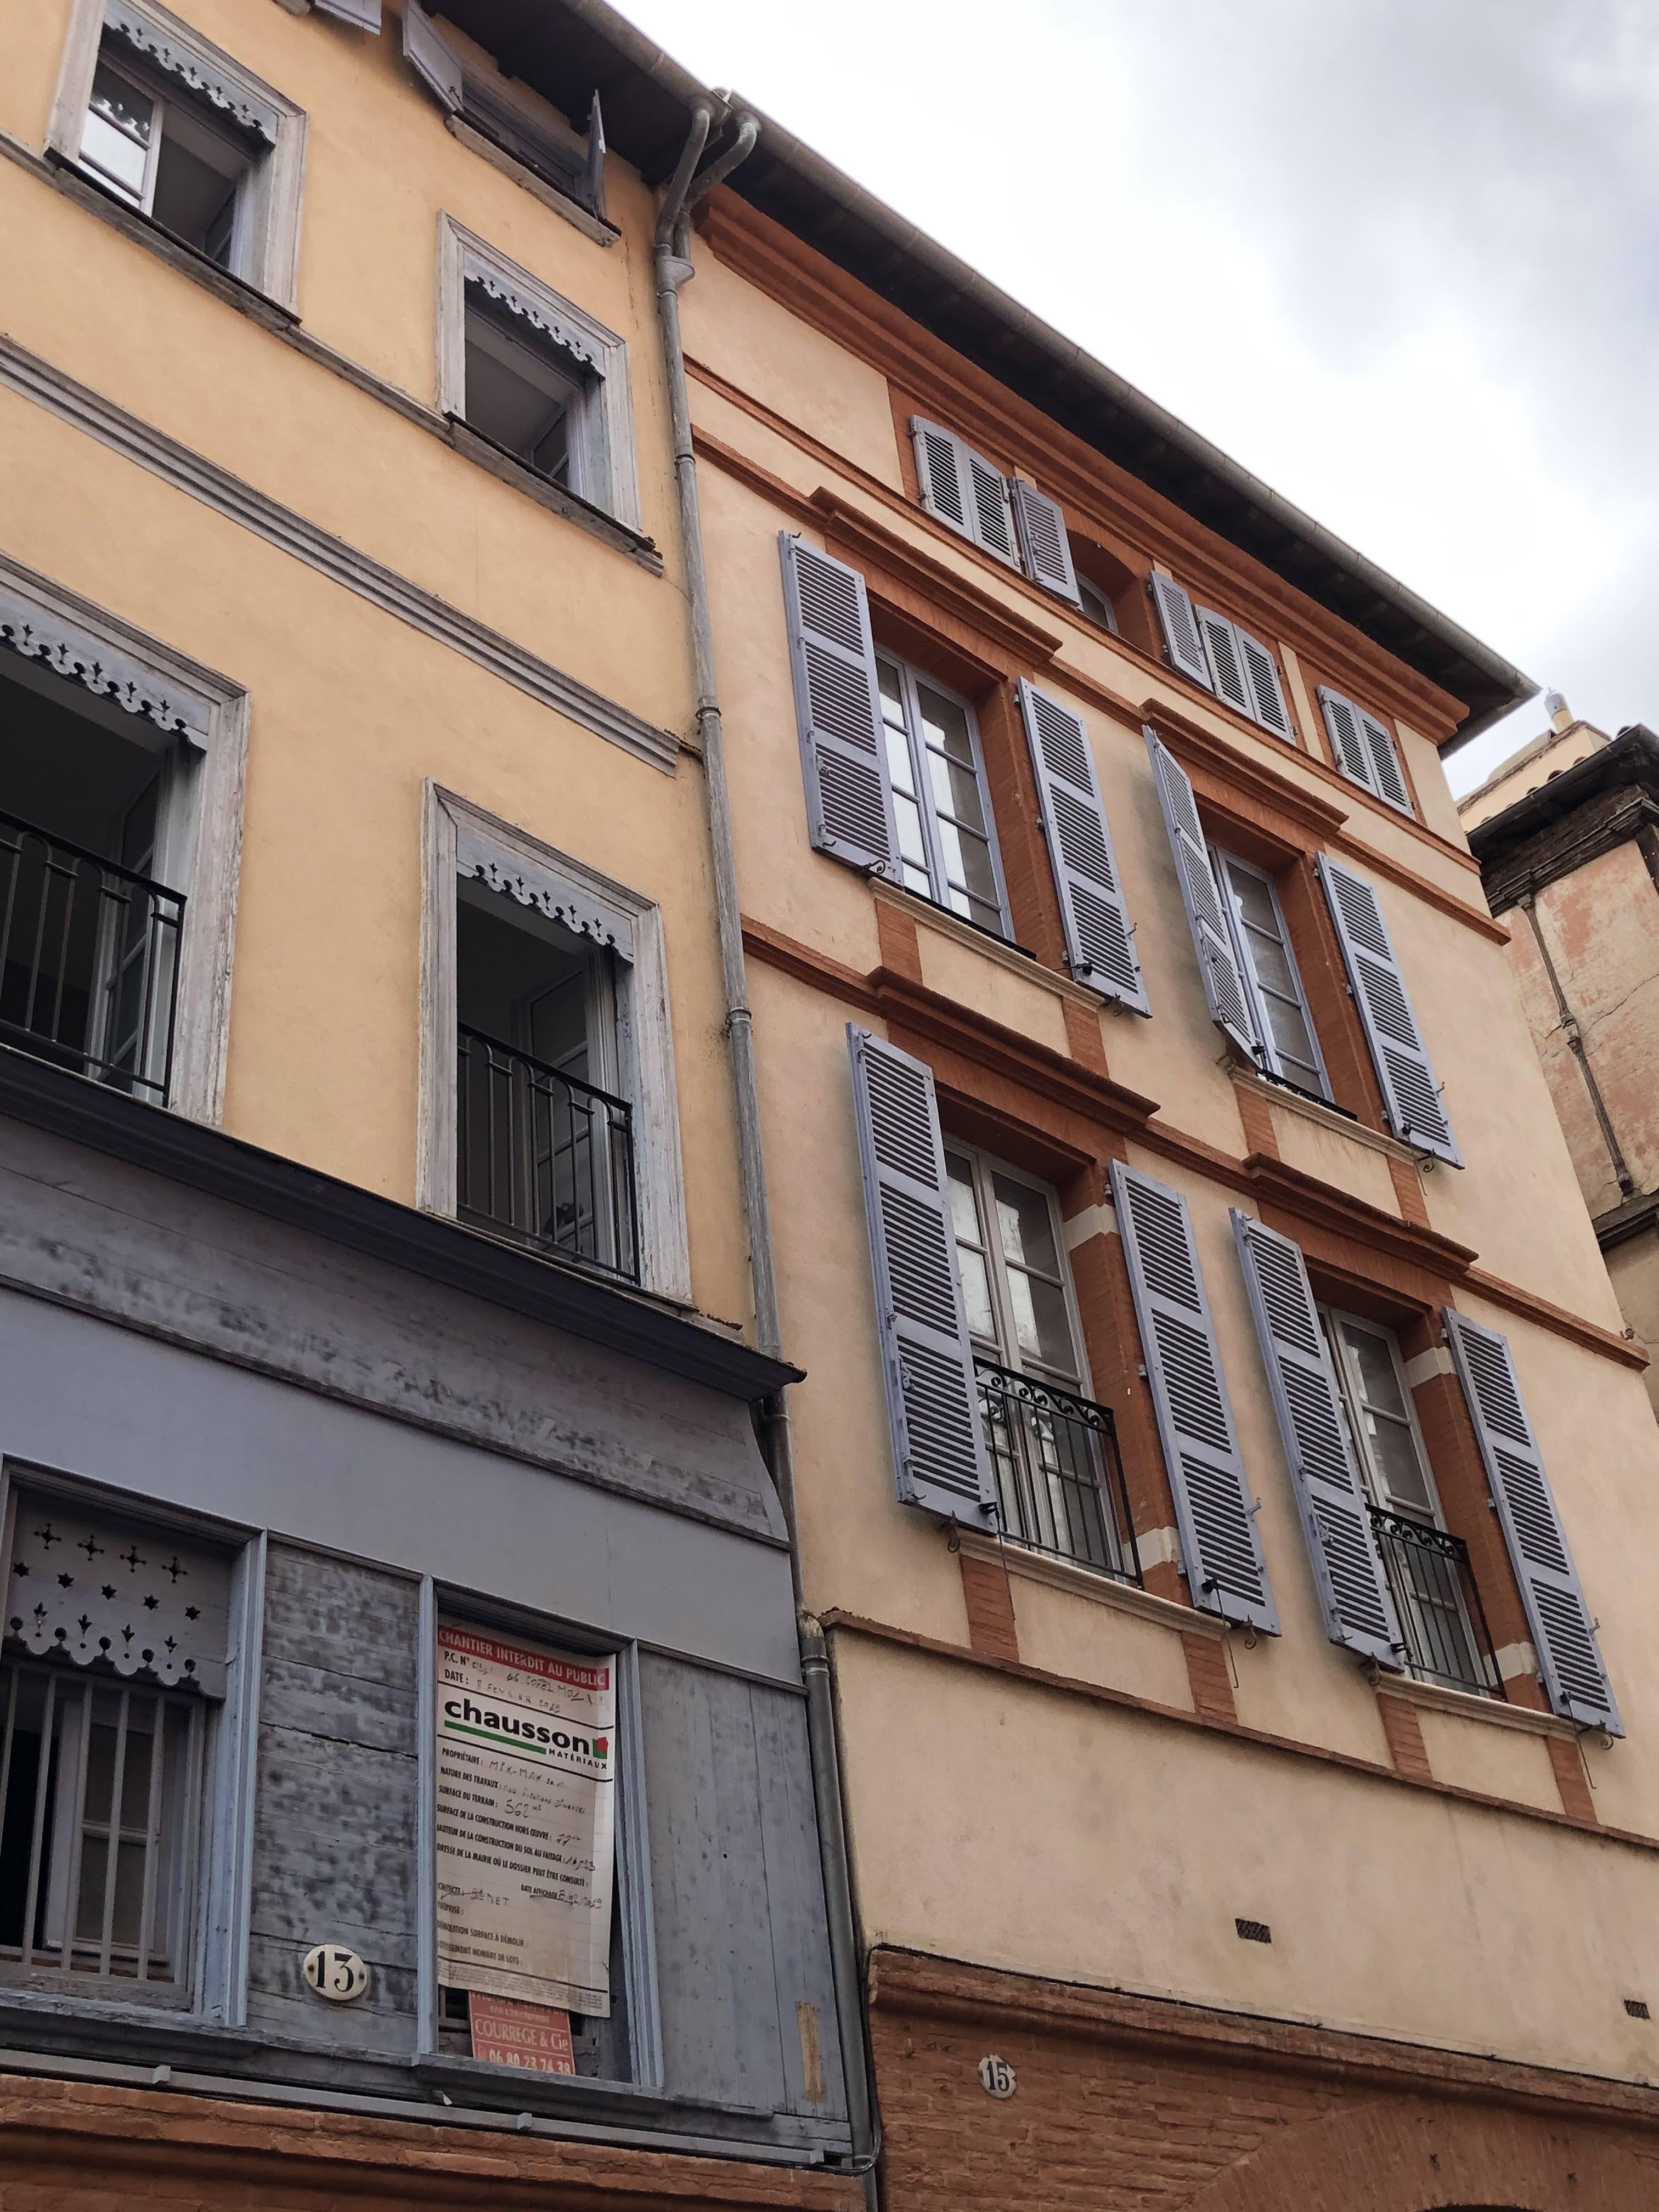 T3 1er étage 76 m2 Toulouse rue Malcousinat Hyper centre Métro A Esquirol (1685) - IMG_3612.jpg